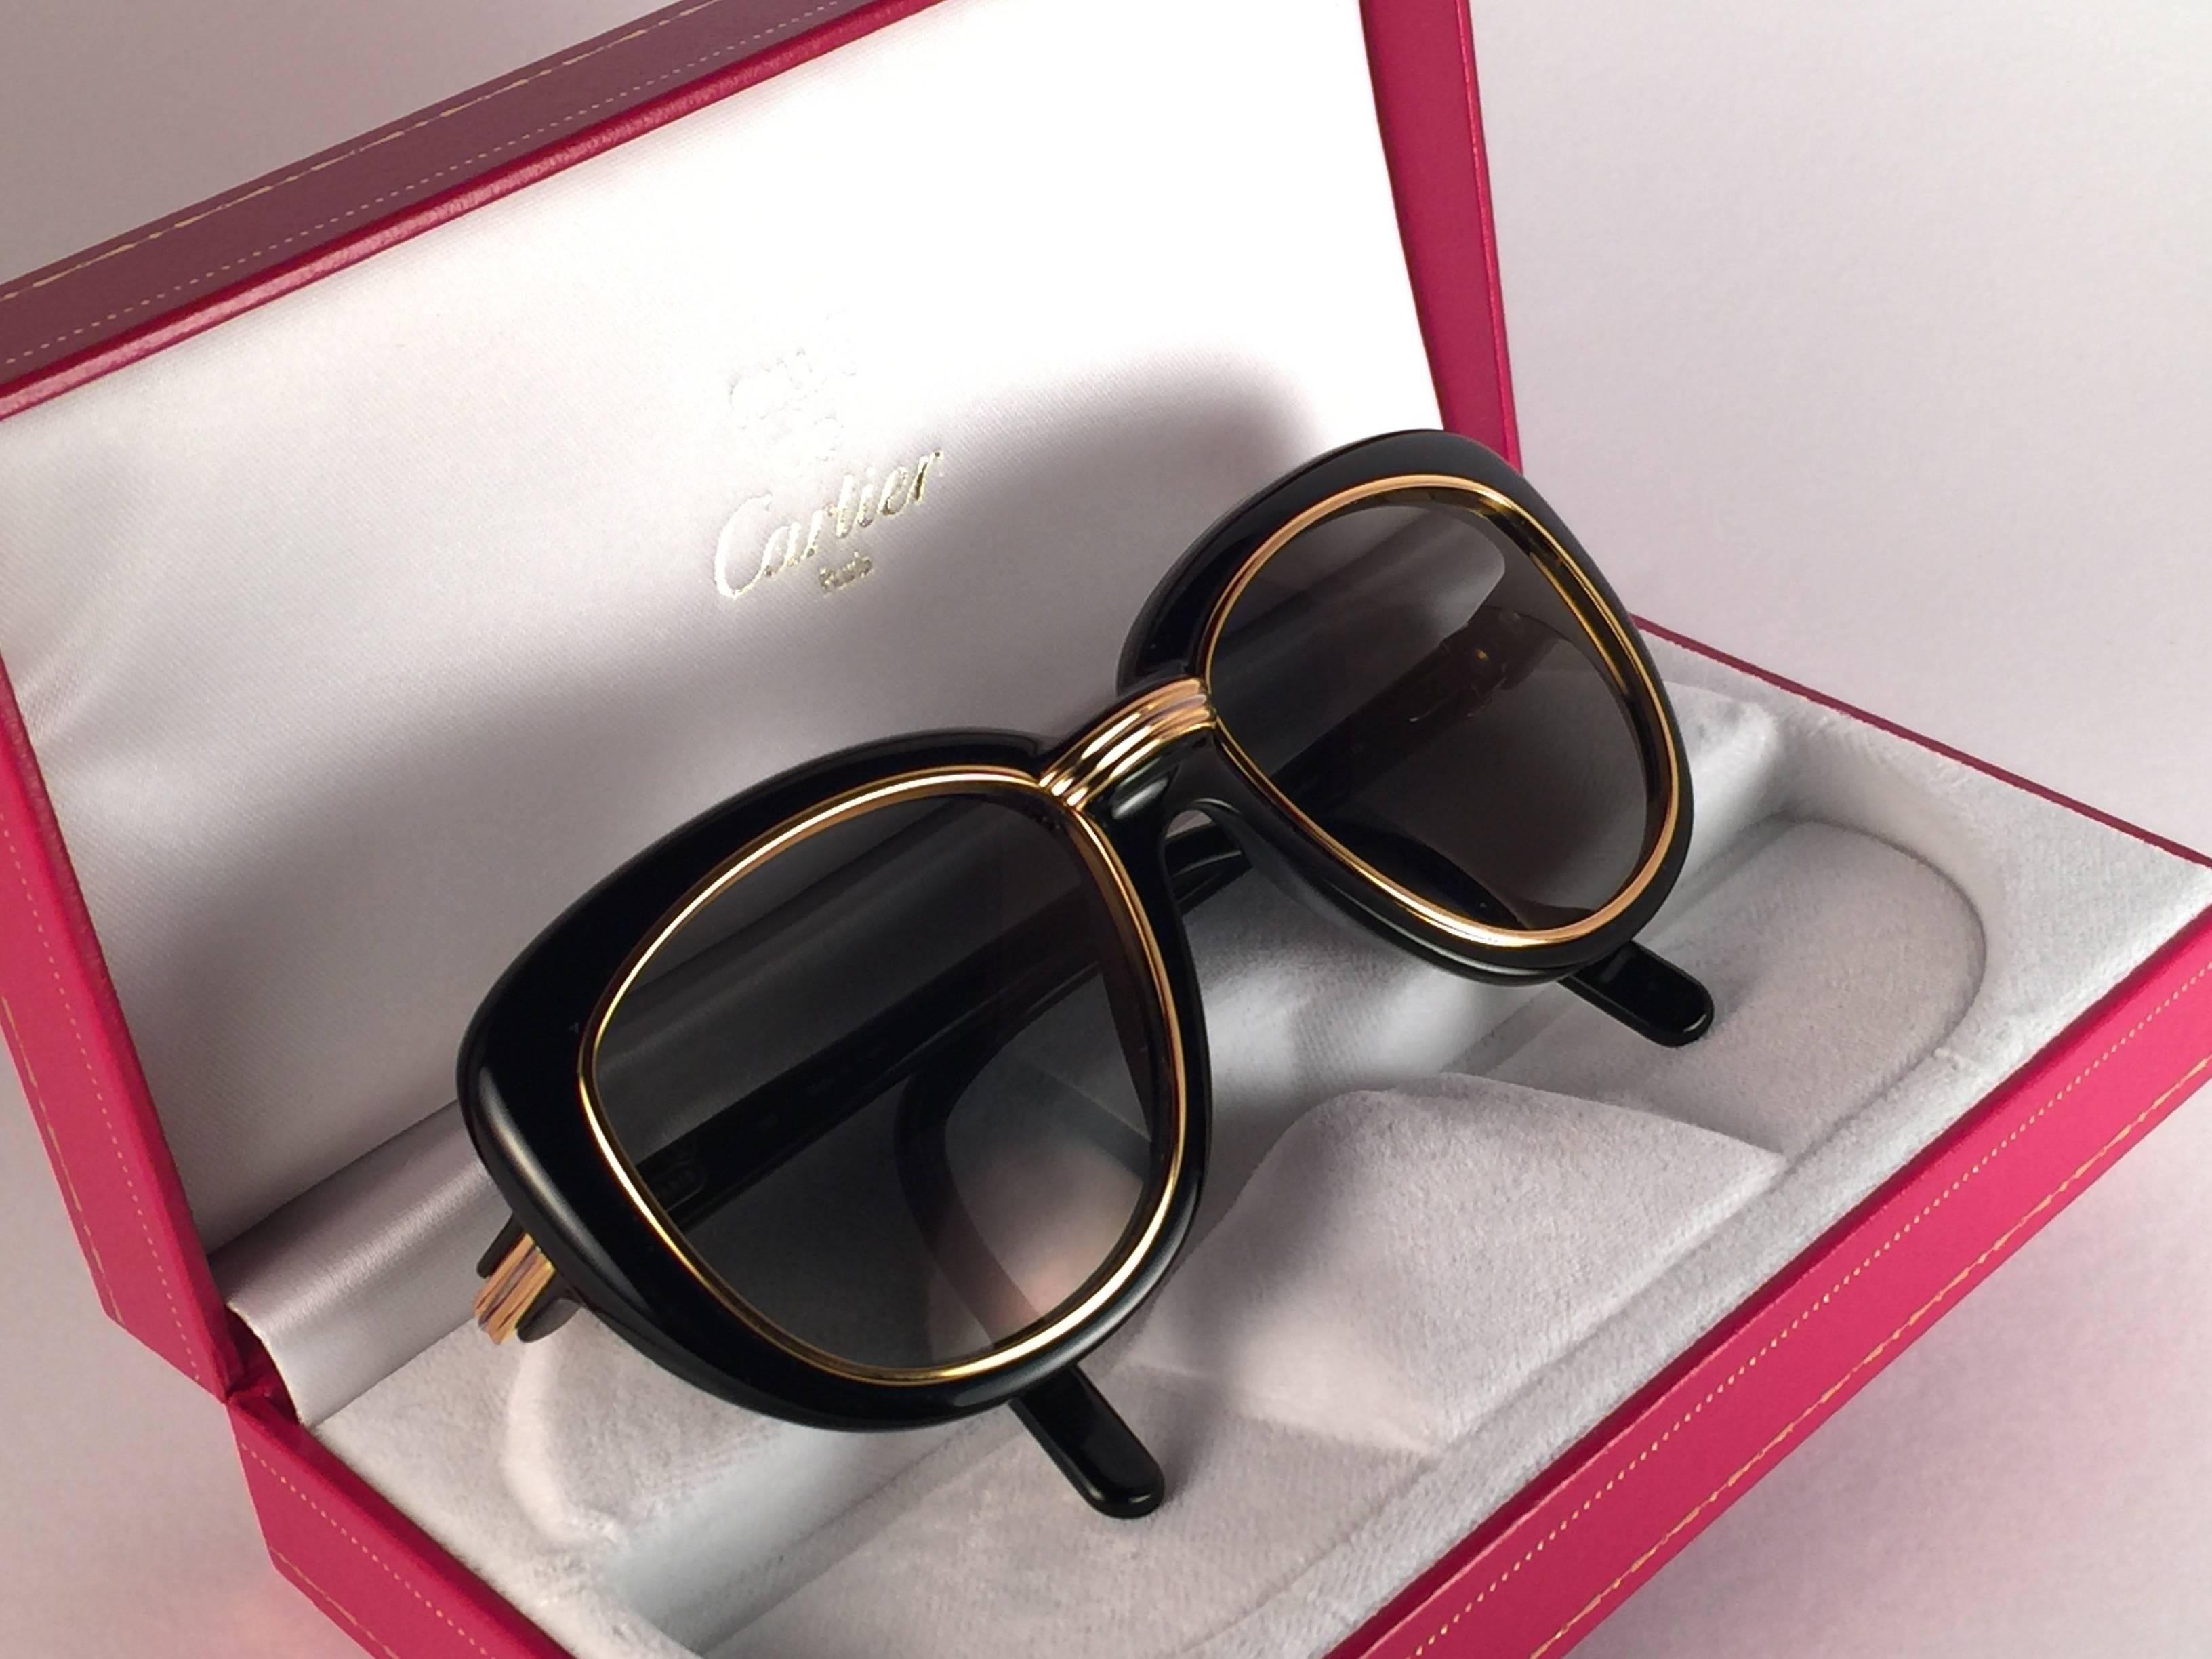 New Cartier Conquete Sunglasses with grey slight gold mirror  (protection contre les UV). Insertions et accents en or jaune et blanc. Tous les poinçons. Les deux bras portent le C.I.C. de Cartier sur la tempe. Ces lunettes sont comme une paire de